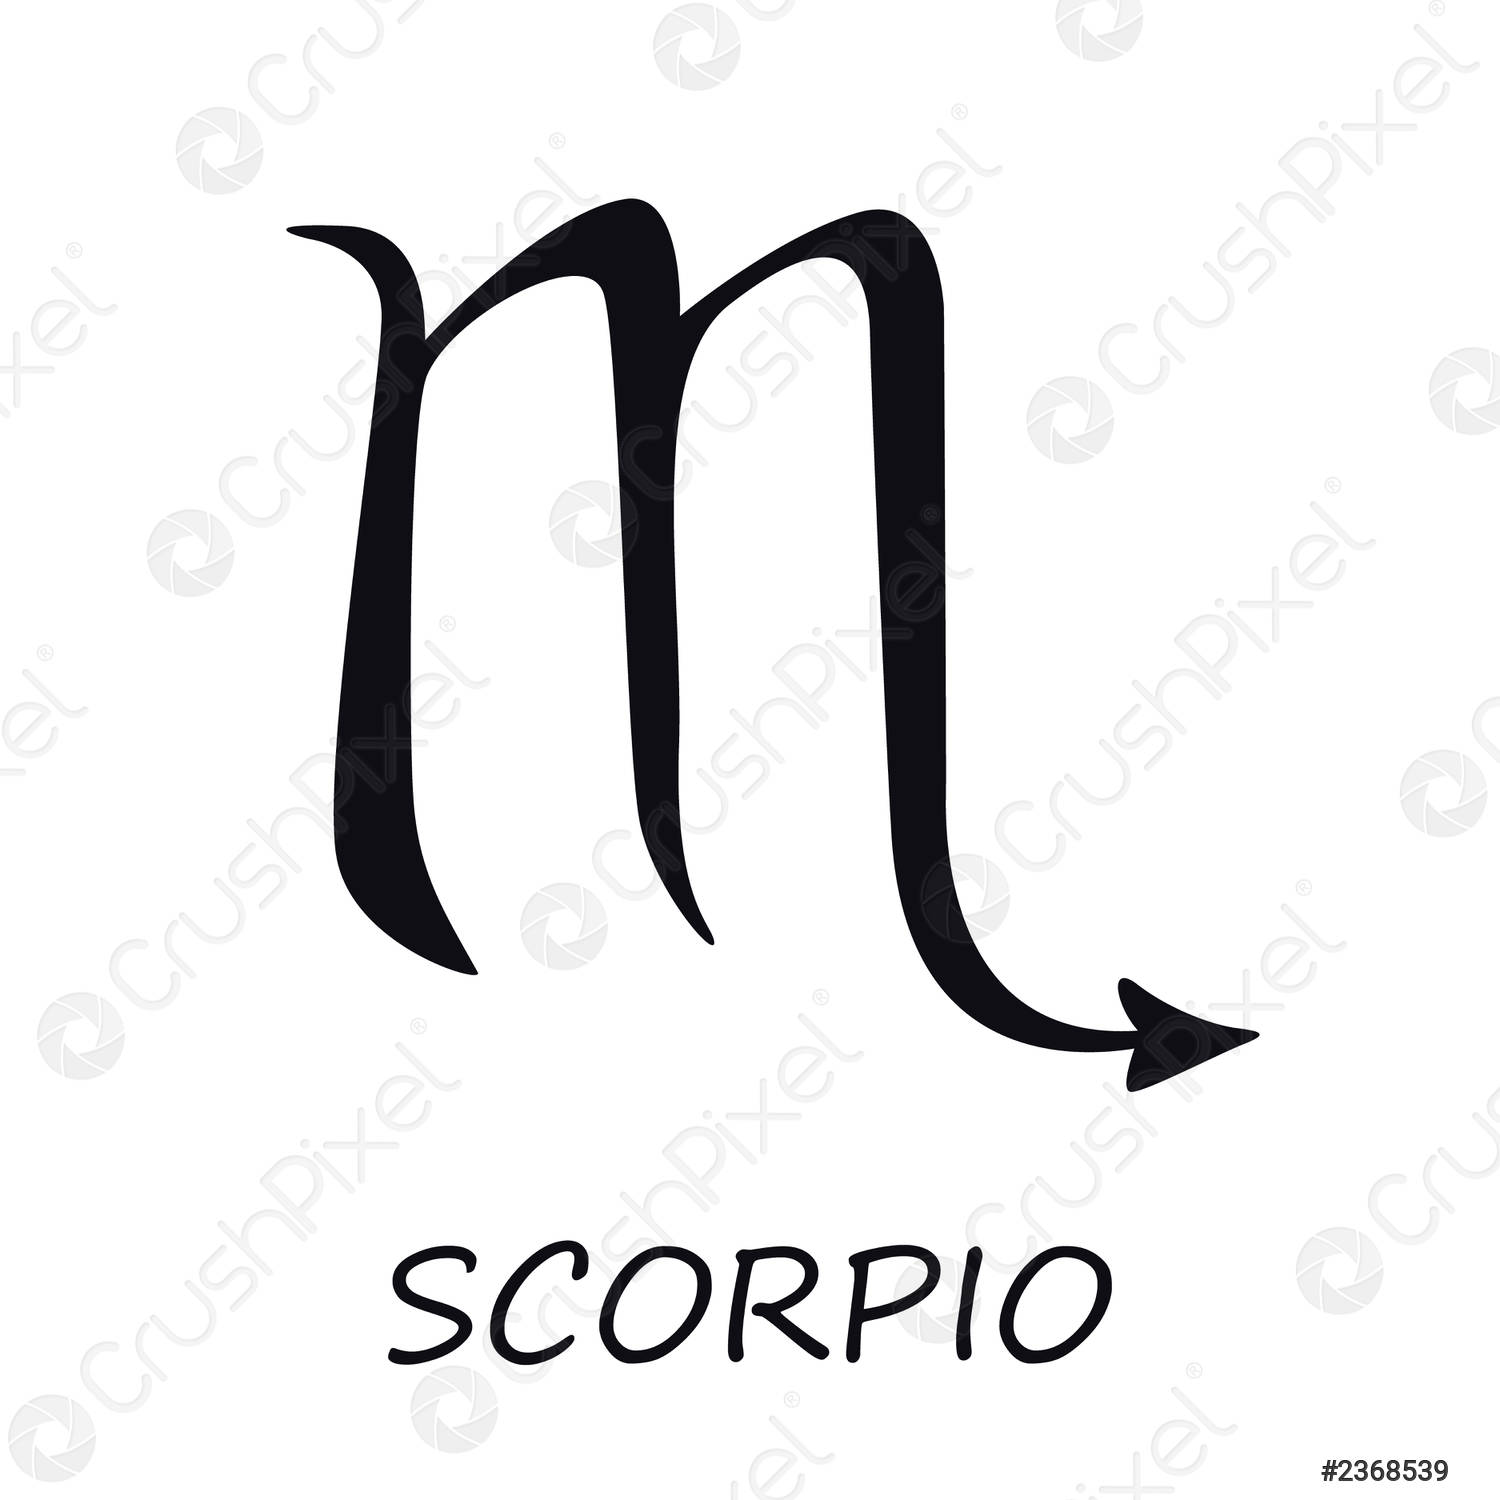 Scorpio Sign Images